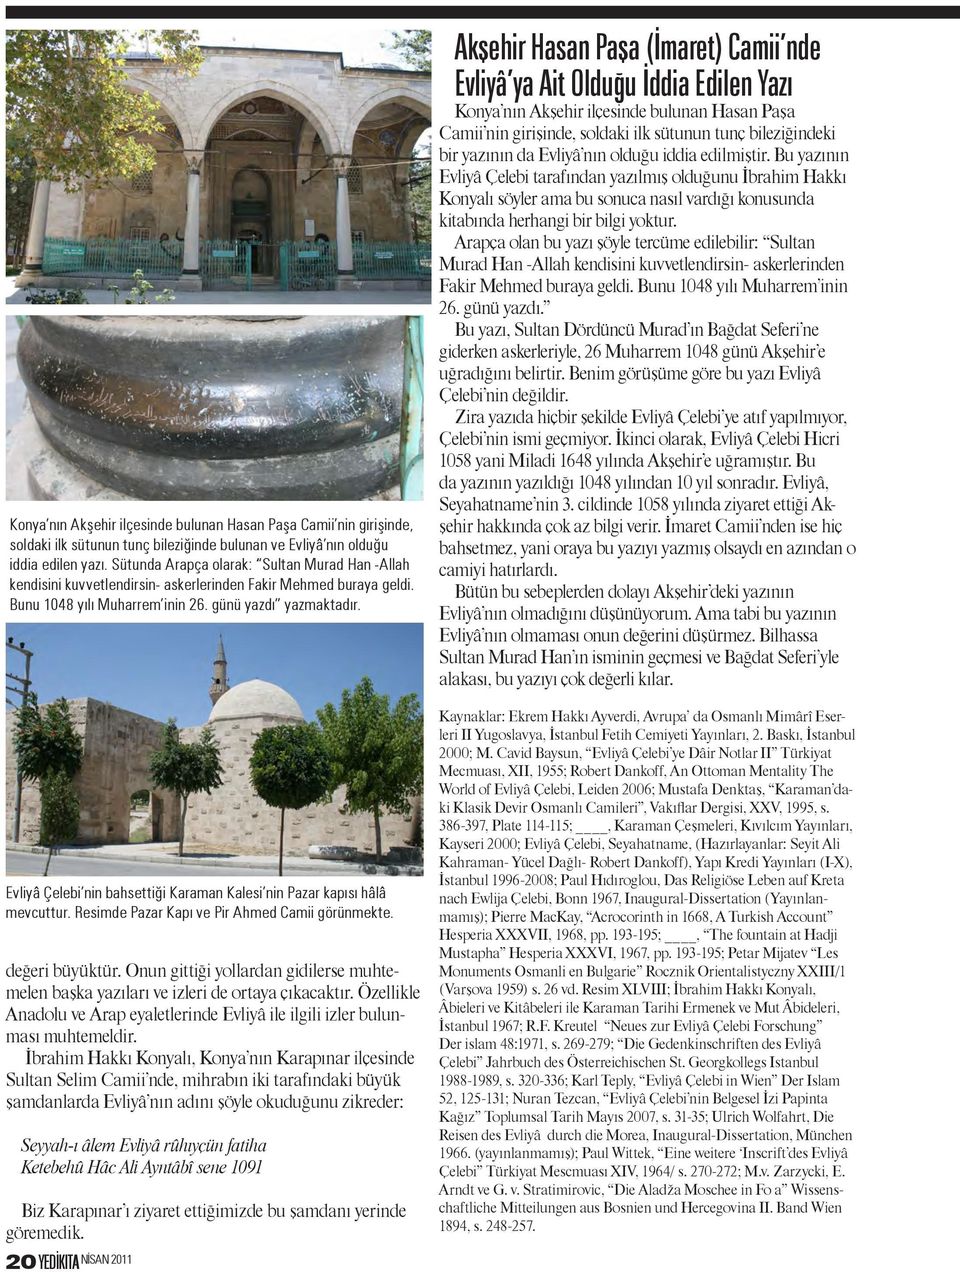 Evliyâ Çelebi nin bahsettiği Karaman Kalesi nin Pazar kapısı hâlâ mevcuttur. Resimde Pazar Kapı ve Pir Ahmed Camii görünmekte. değeri büyüktür.